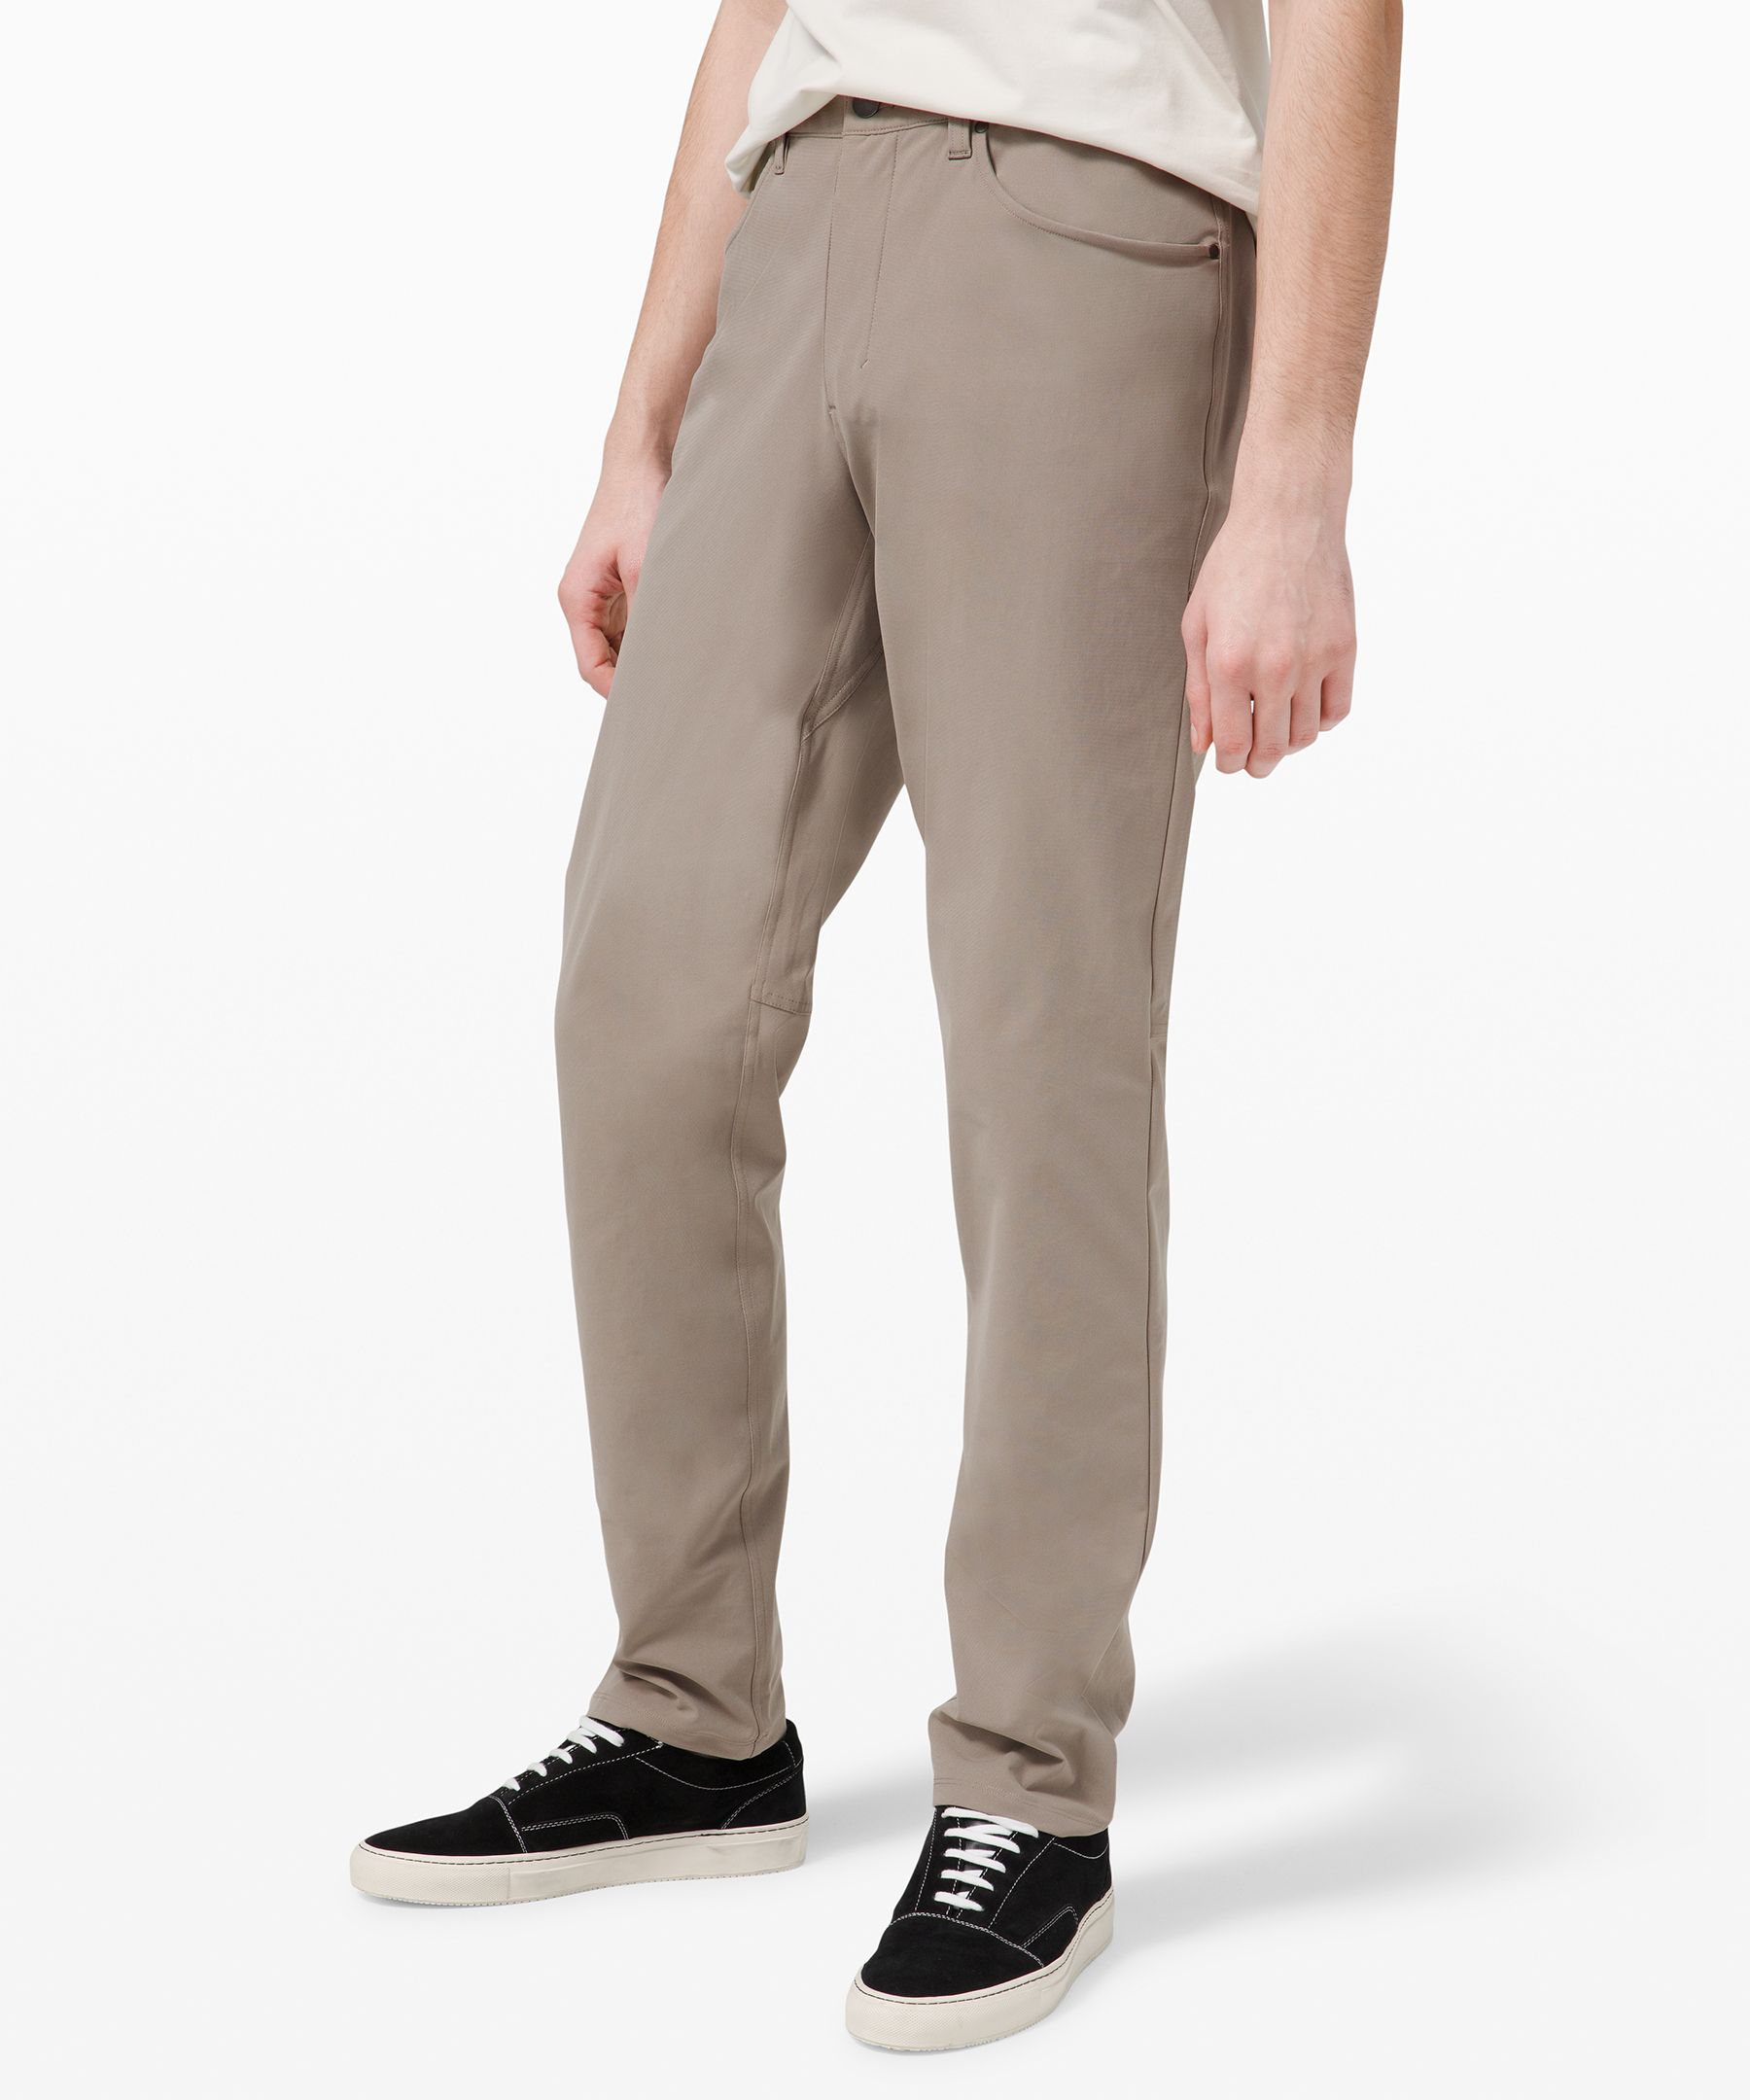 Lululemon Abc Classic-fit Pants 30" Warpstreme